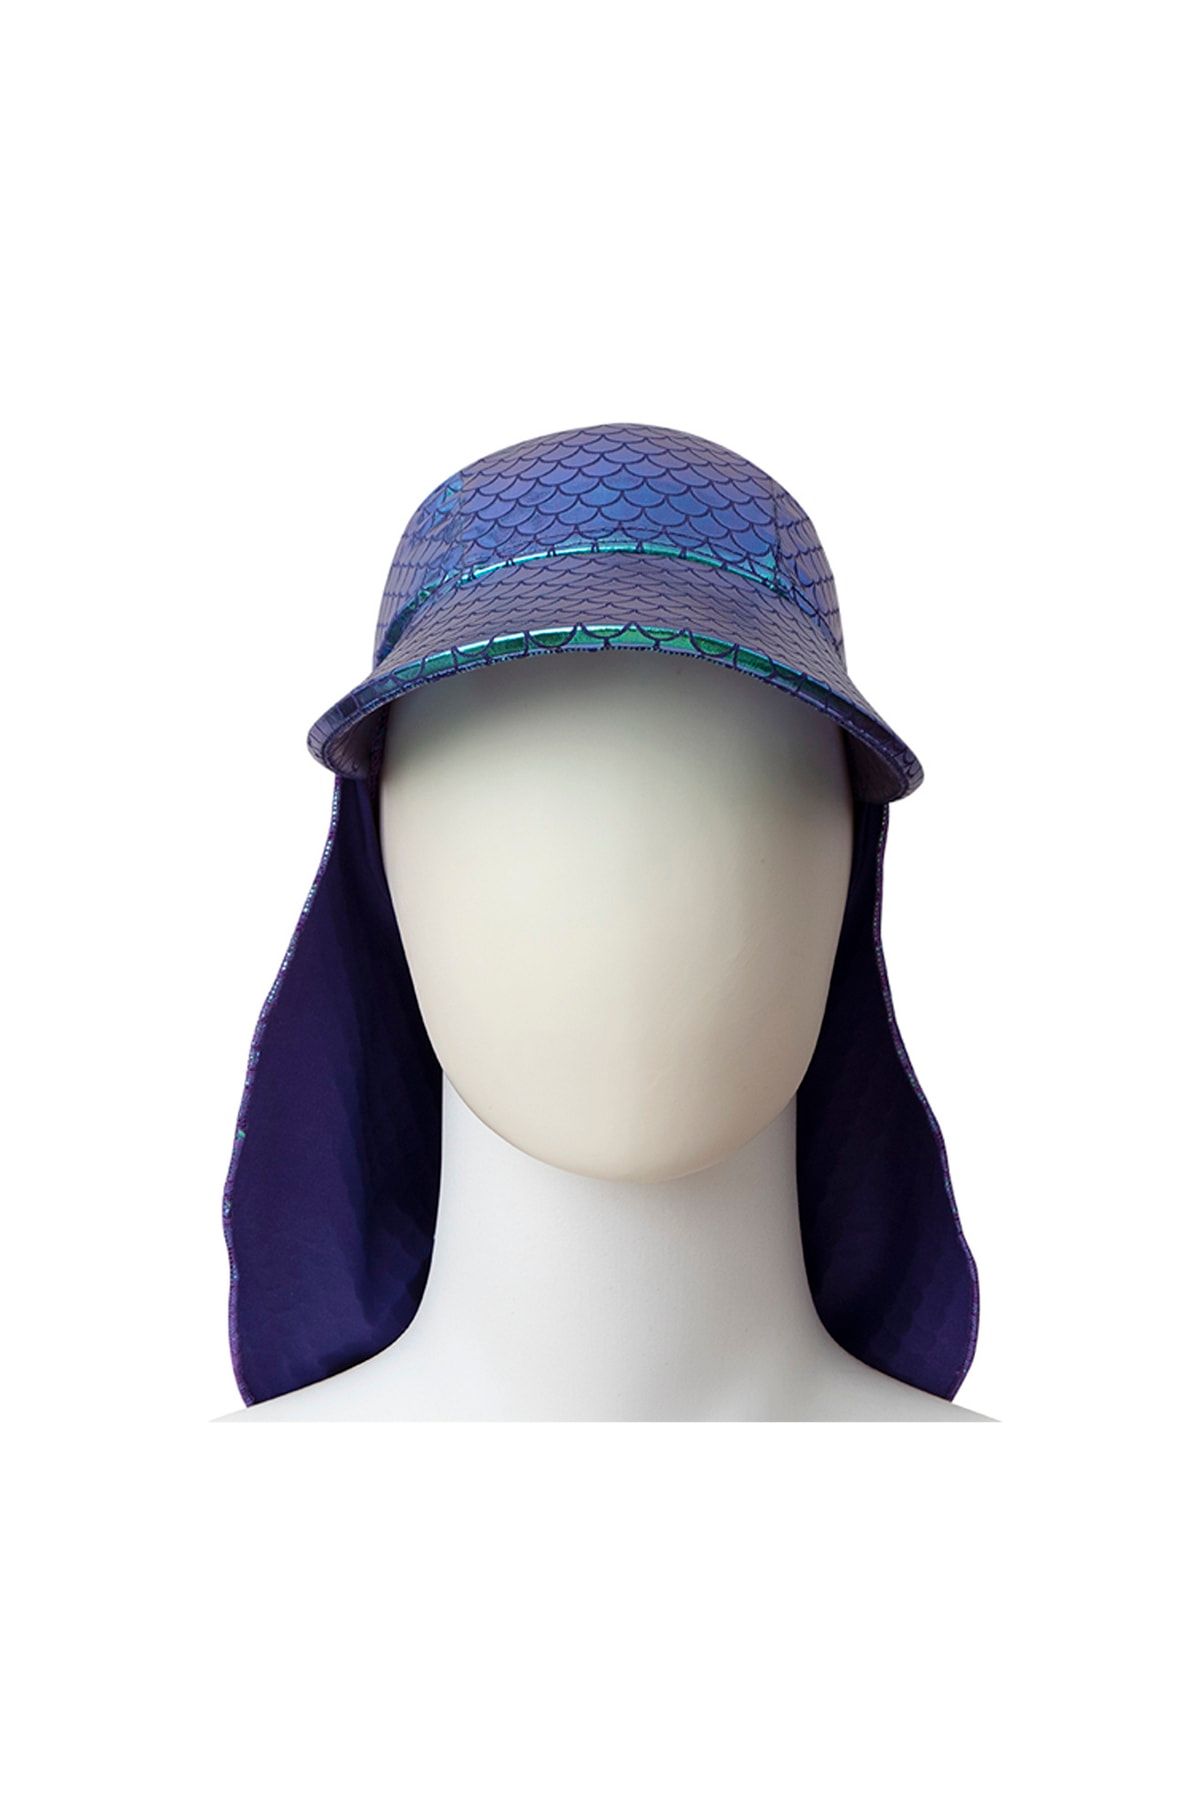 SLIPSTOP Baskılı Çok Renkli Kız Çocuk Güneş Şapkası Sk21110016 Ivy